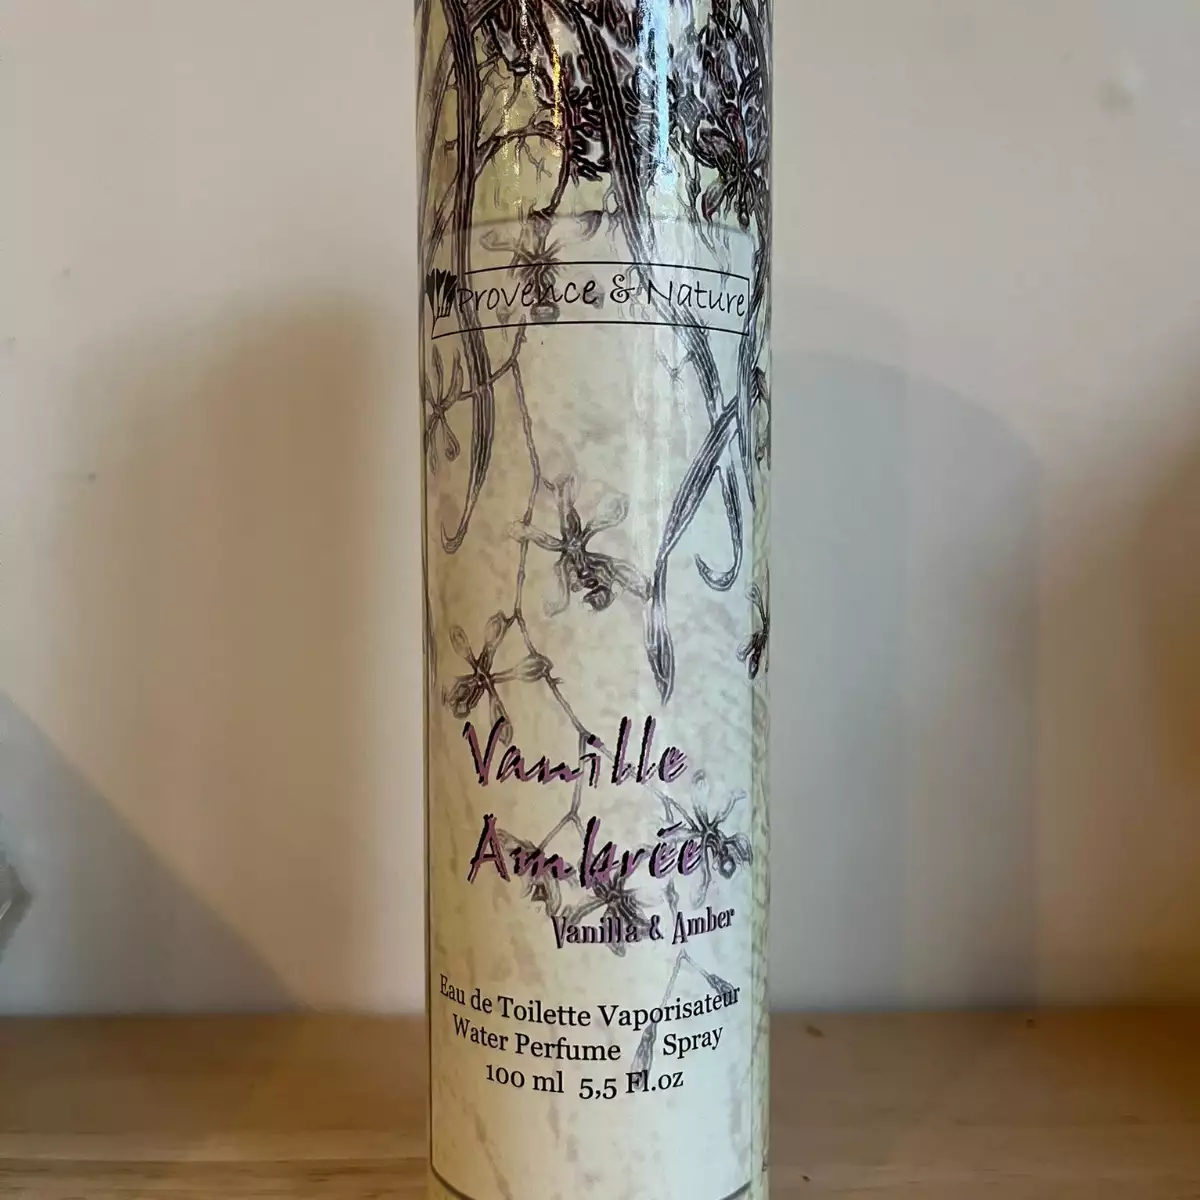 Vanille ambrée - Provence et Nature